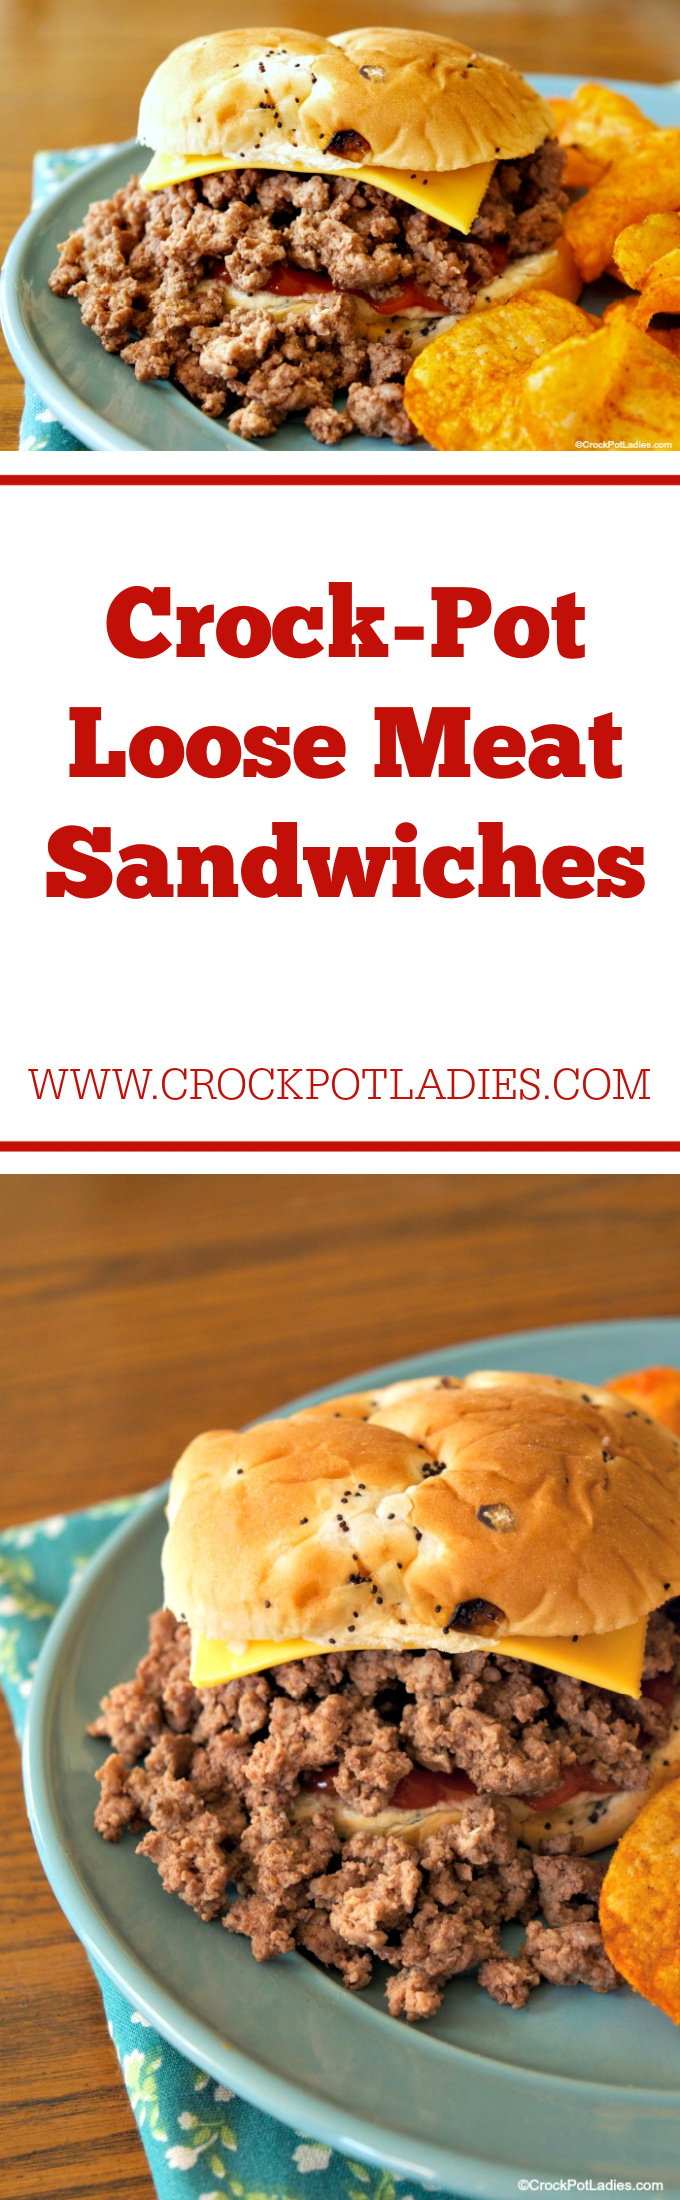 Crock-Pot Loose Meat Sandwiches